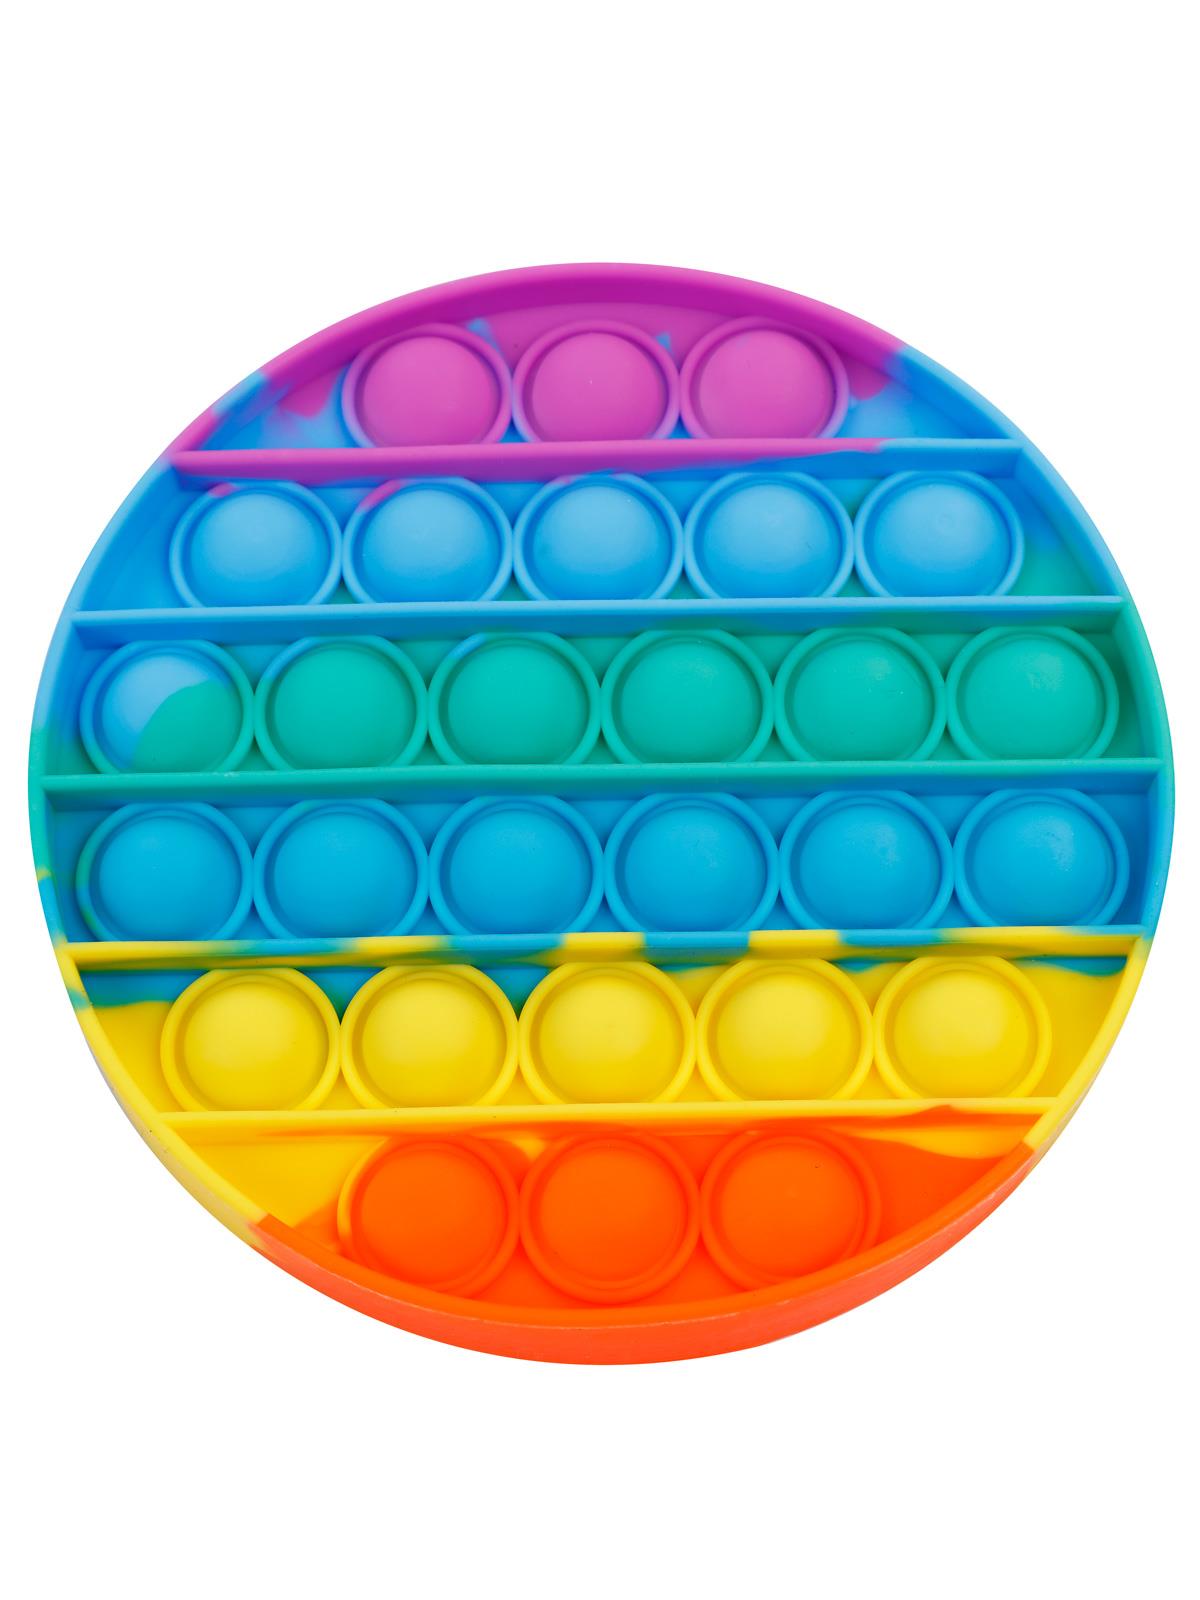 Can Oyuncak Özel Pop It Bitmeyen Balon Patlatma Oyunu / Gökkuşağı Karışık Renkli Daire